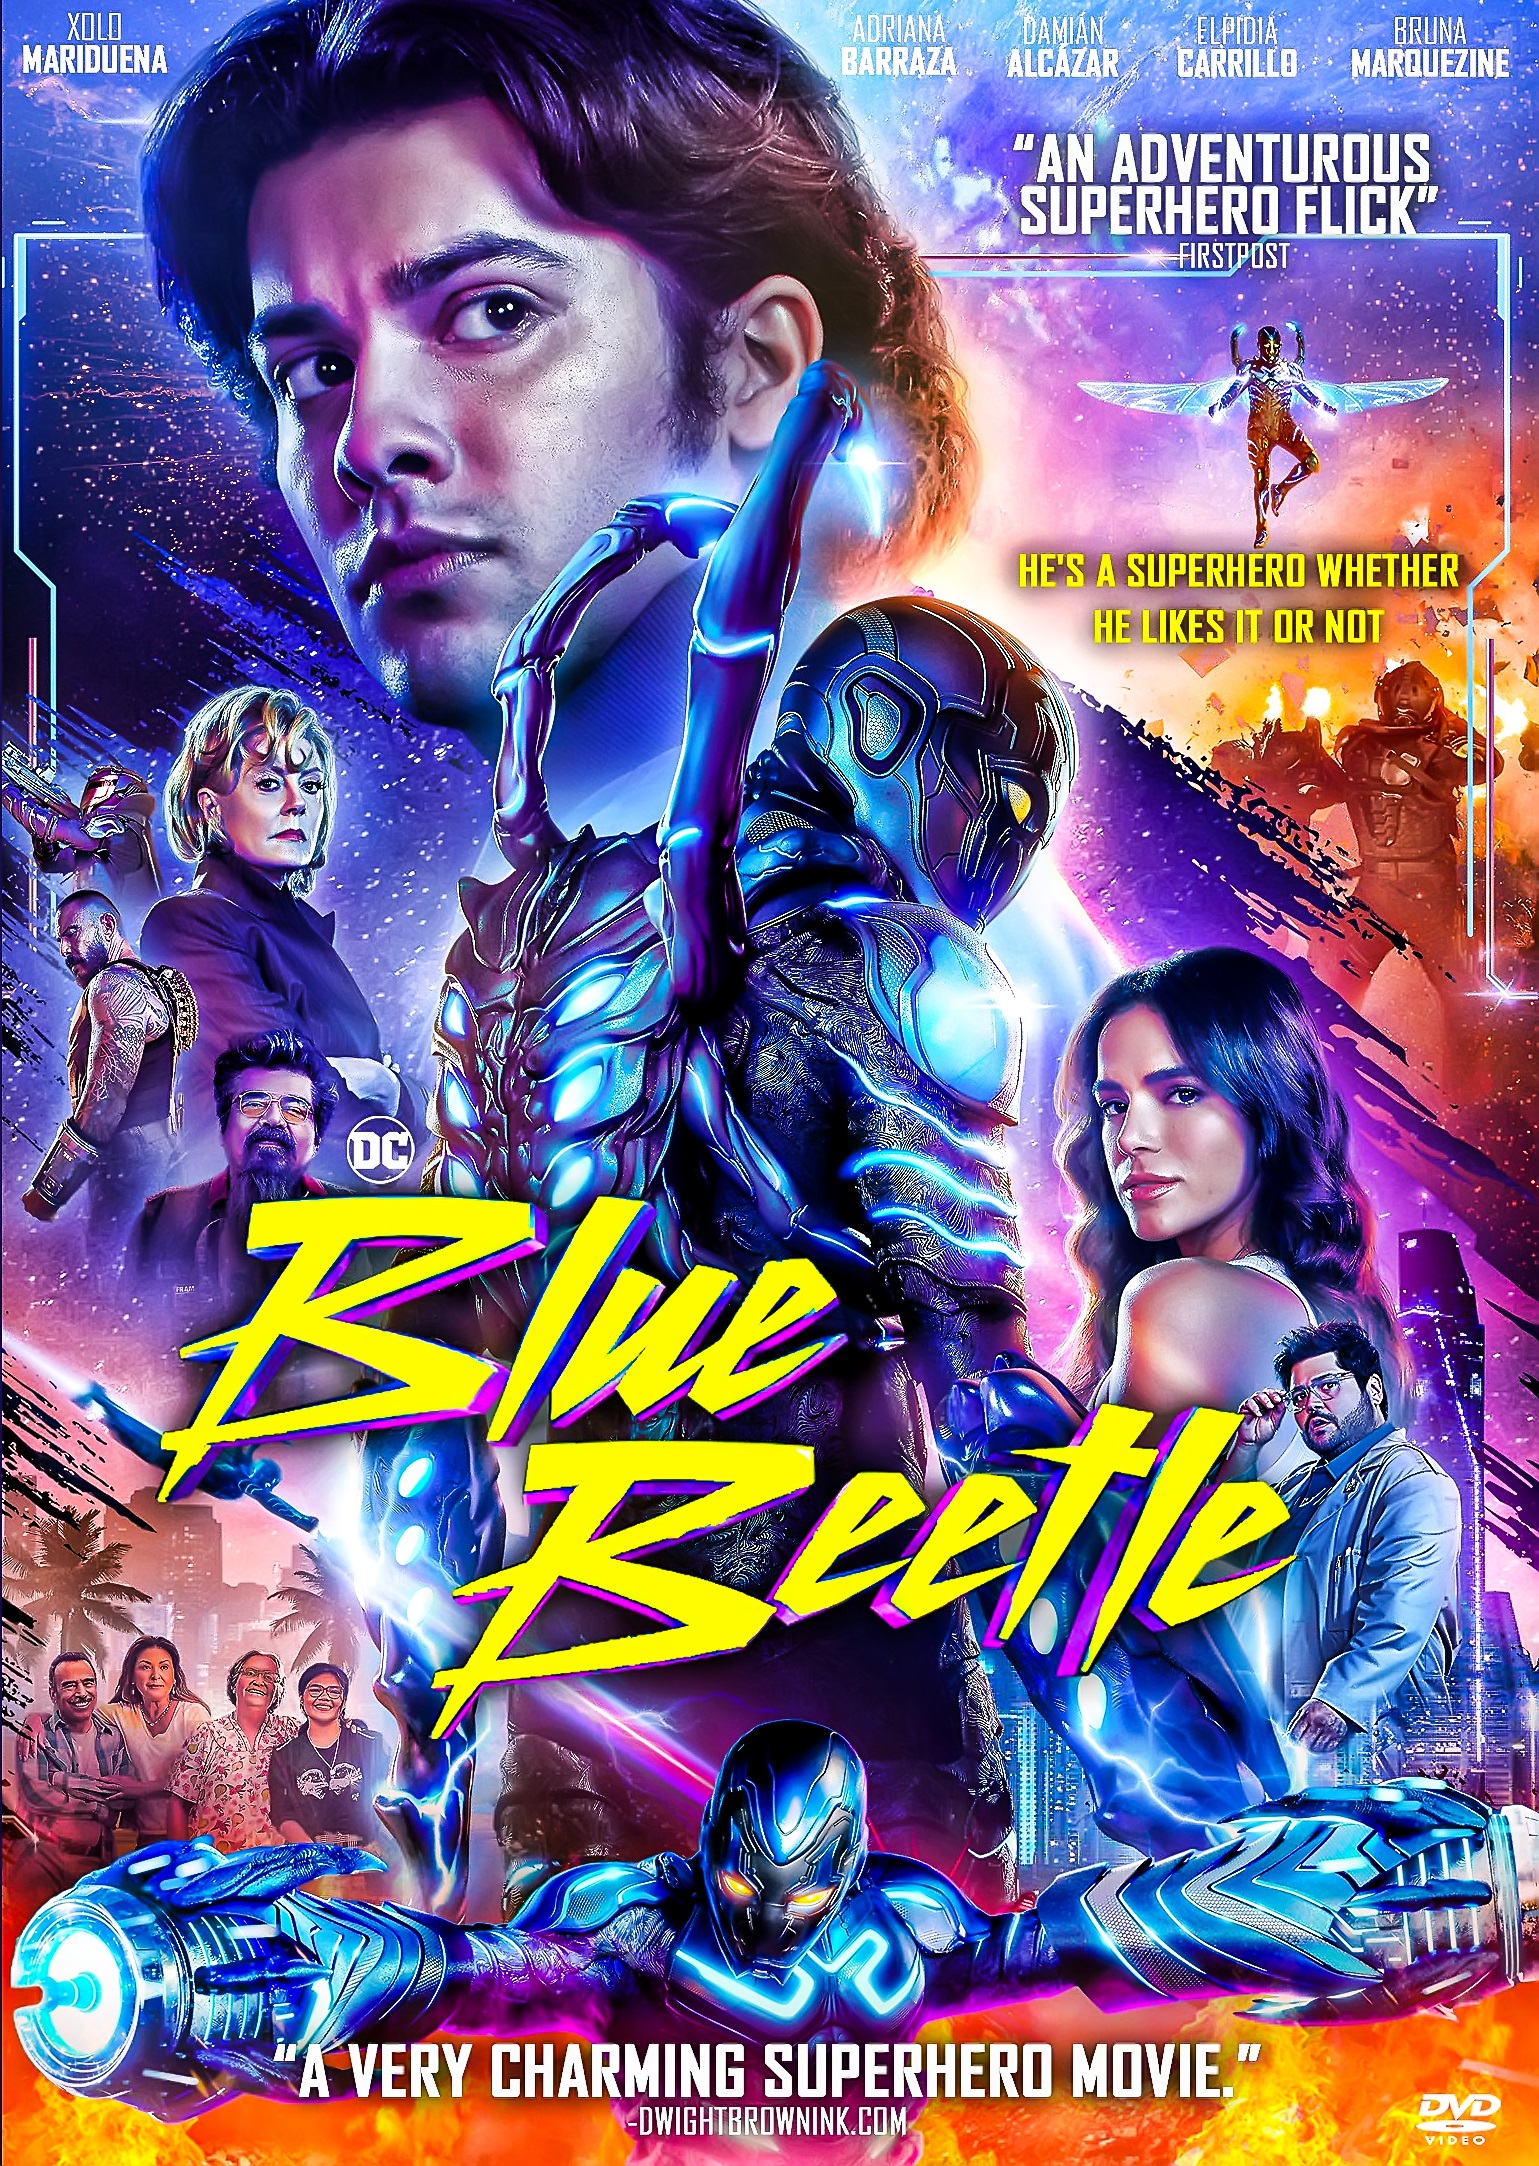 Blue Beetle HD-DVD 7293 - Vidéothéque THE BEATLES